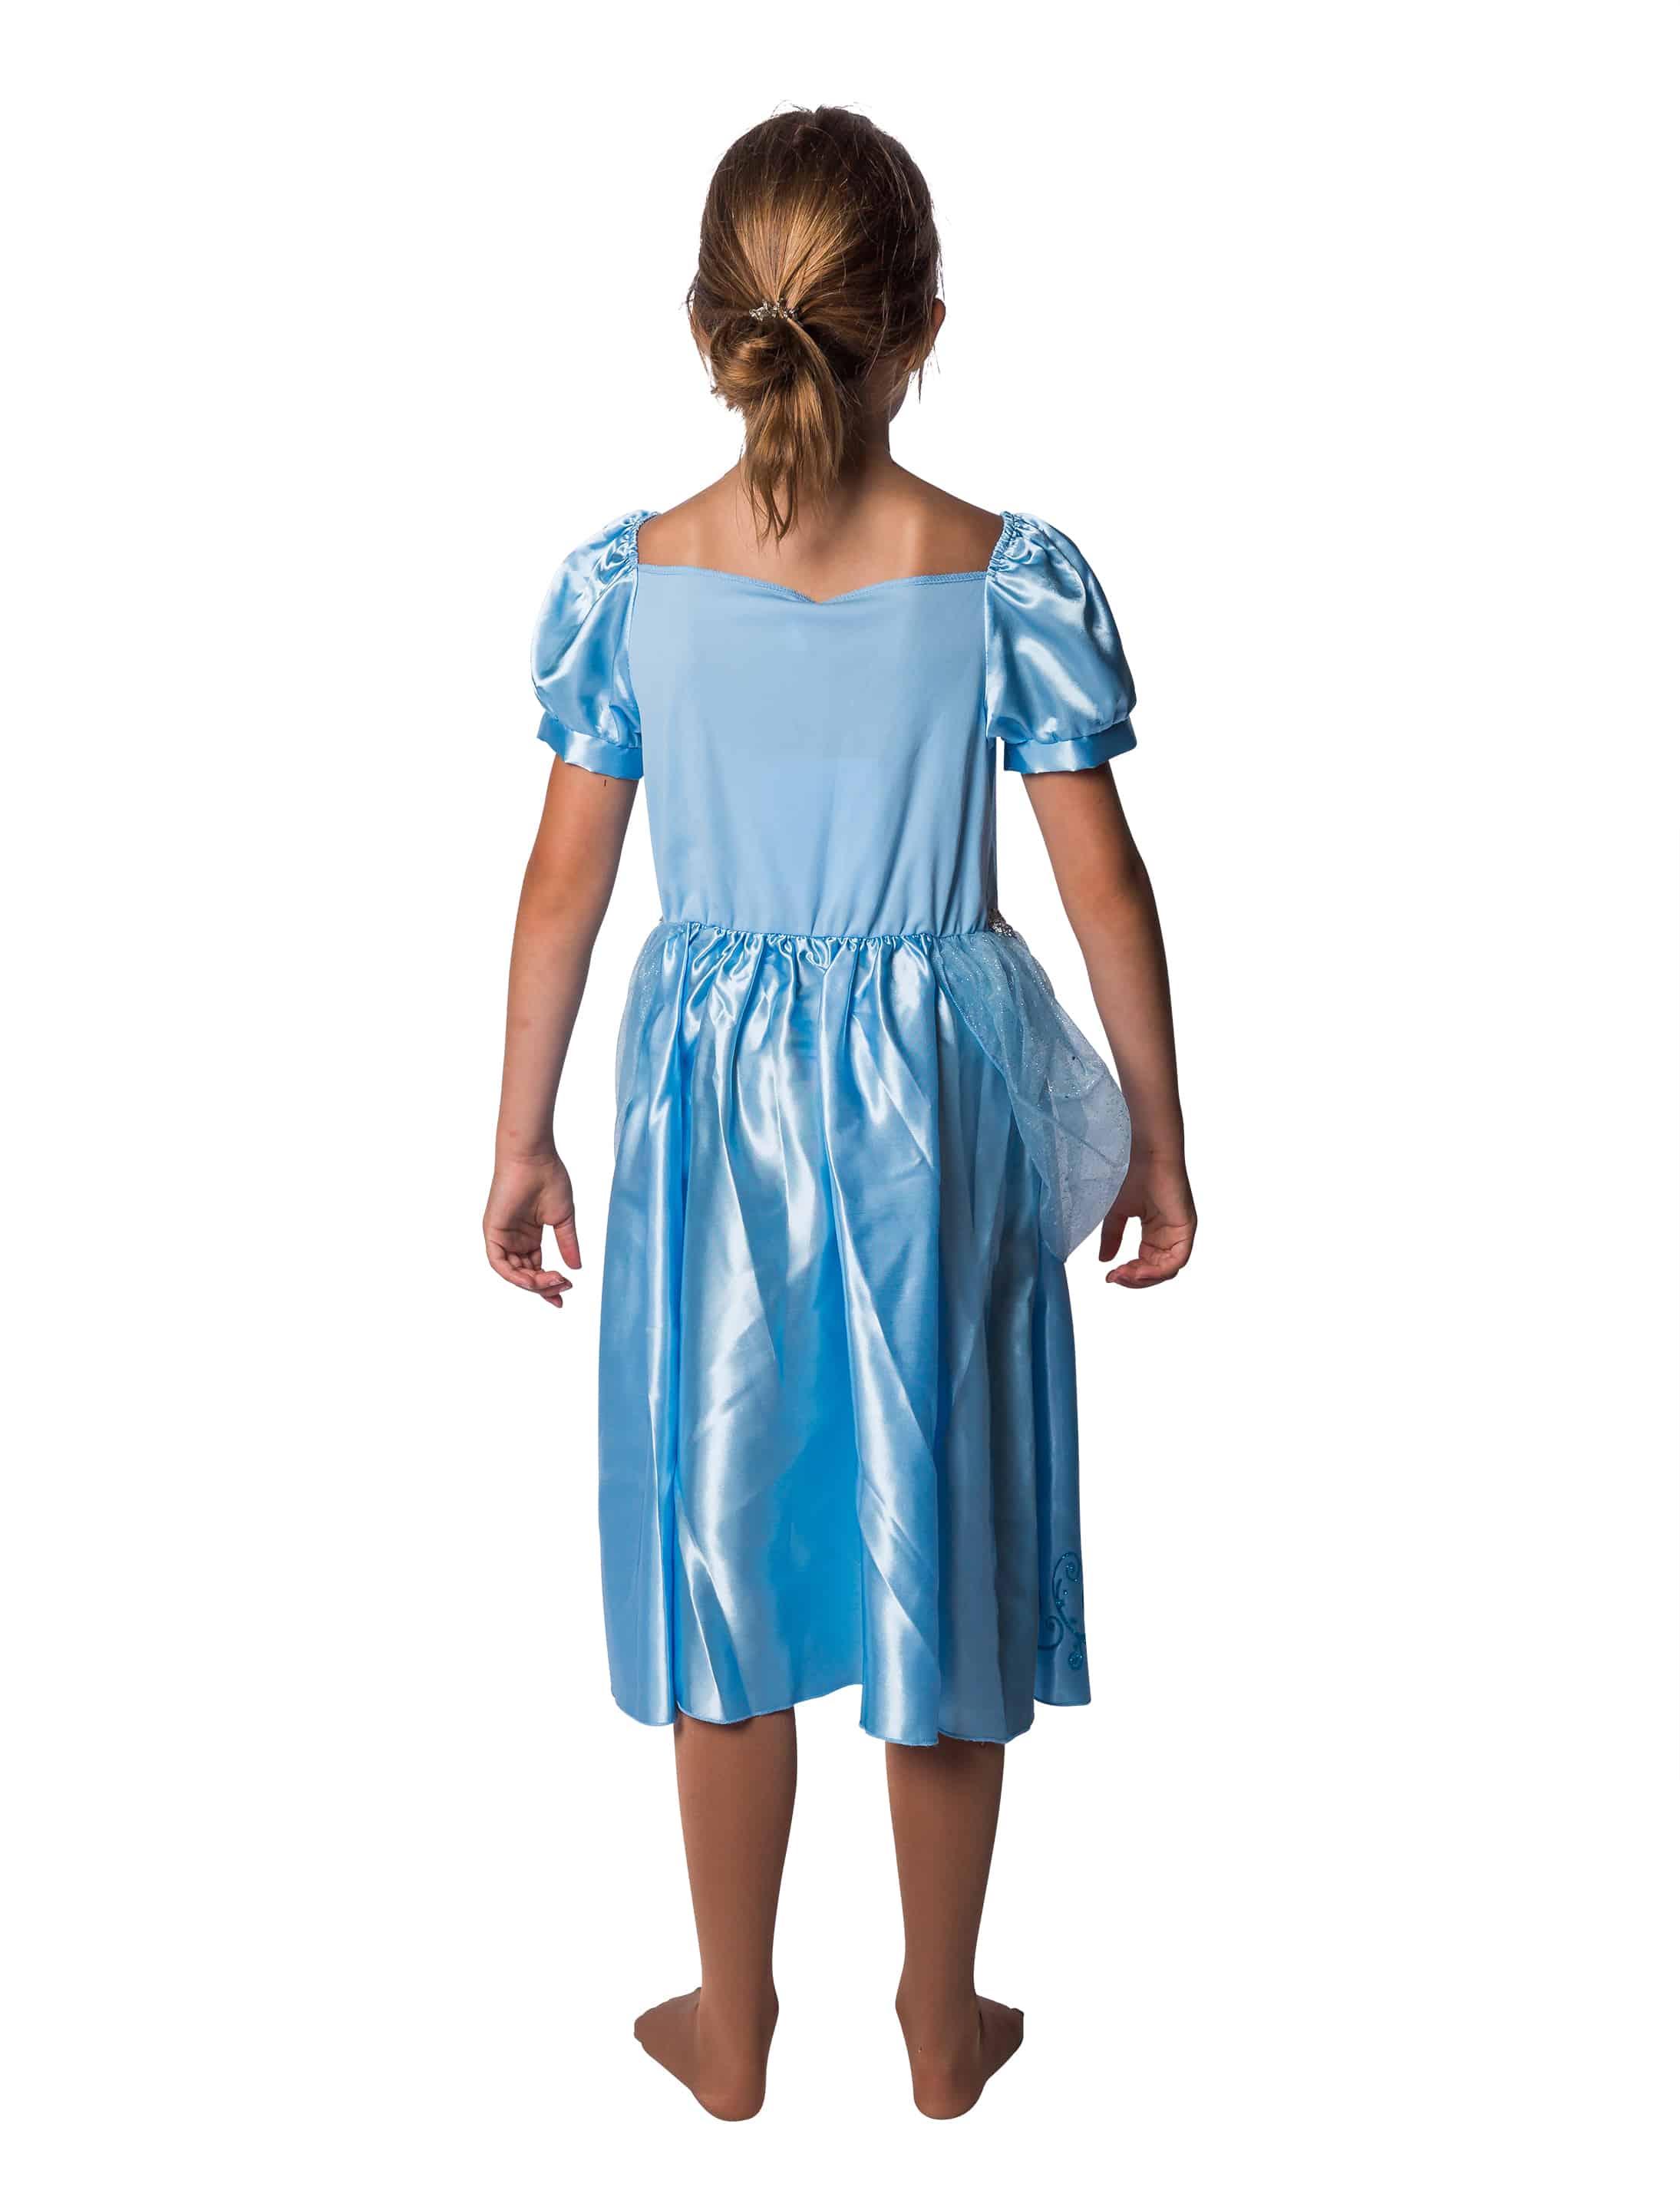 Kleid Prinzessin Kinder hellblau 5-6 Jahre